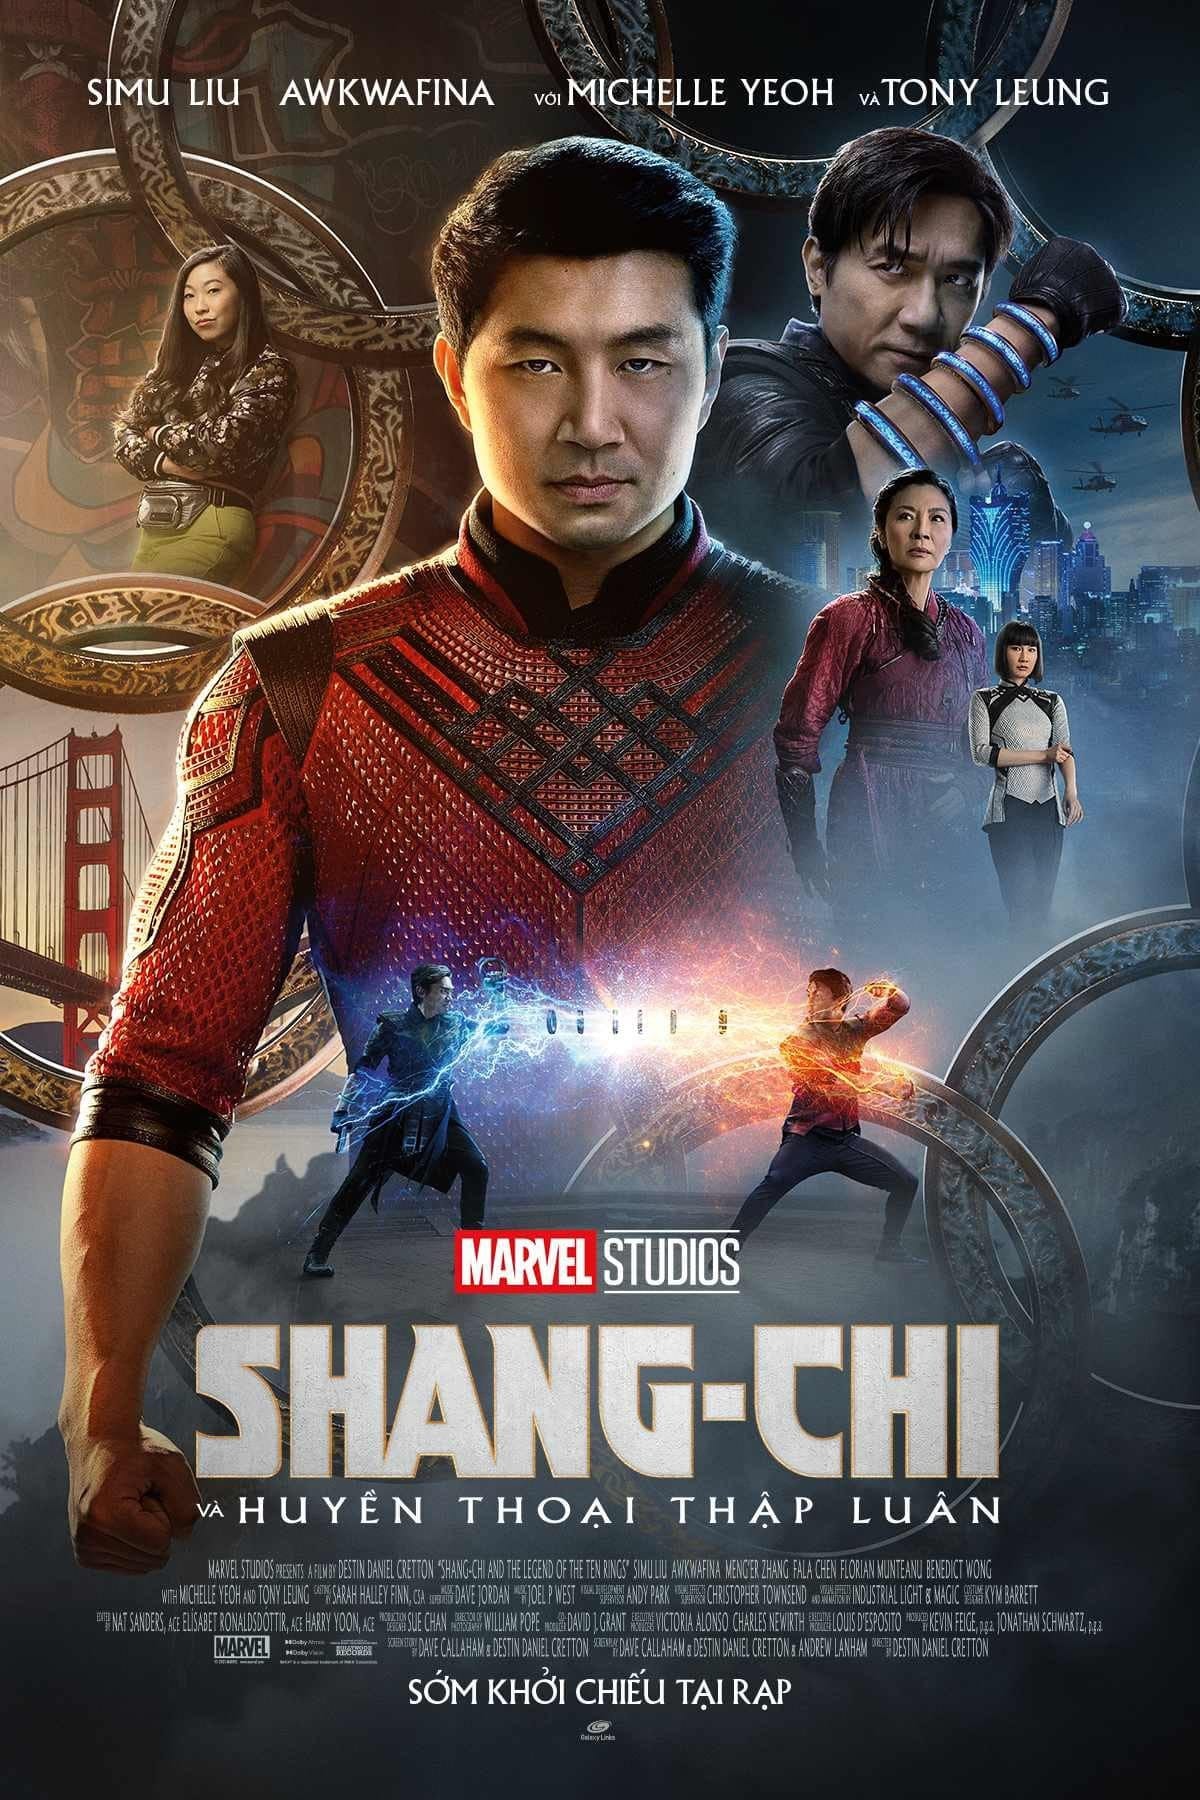 Shang-Chi và Huyền Thoại Thập Luân (Shang-Chi and the Legend of the Ten Rings) [2021]